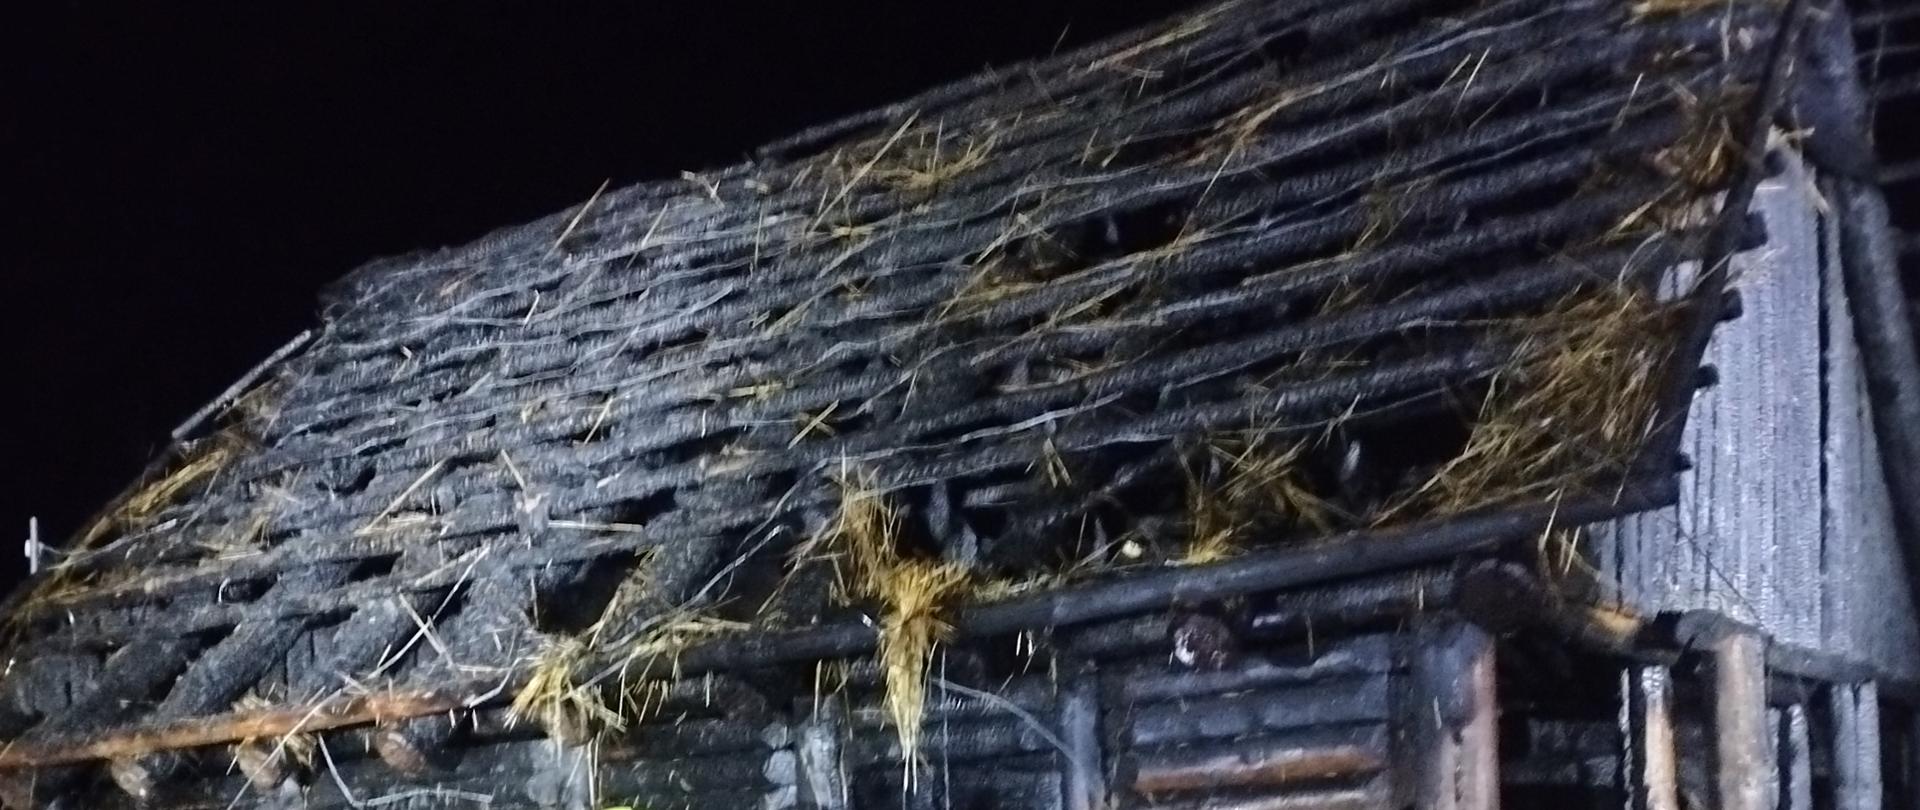 Zdjęcie w porze nocnej. Widać nadpalony budynek drewniany. Podłoże trawiaste. Oświetlenie sztuczne.